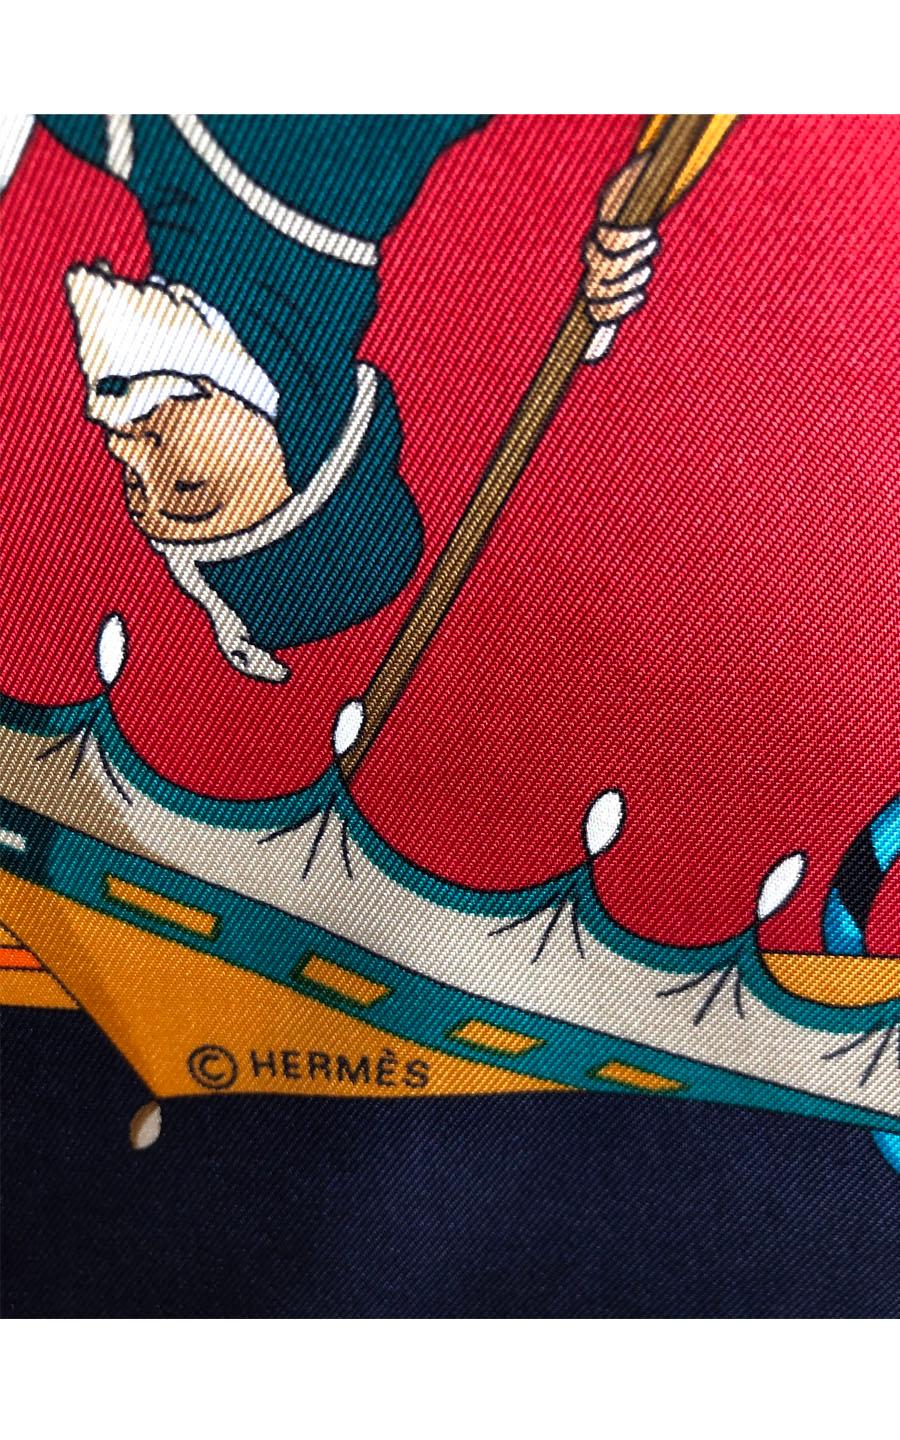 Informations : 
Brand: Hermès
Model : Carré 90
Type : 
Fabric : Silk
Color: Multicolor
Dimensions :  90 cm
Serial Number : 

Descriptions of the product: 
General Condition : Very Good


Hermès Vintage Carré “Ombrelles et Parapluies” by Hubert de